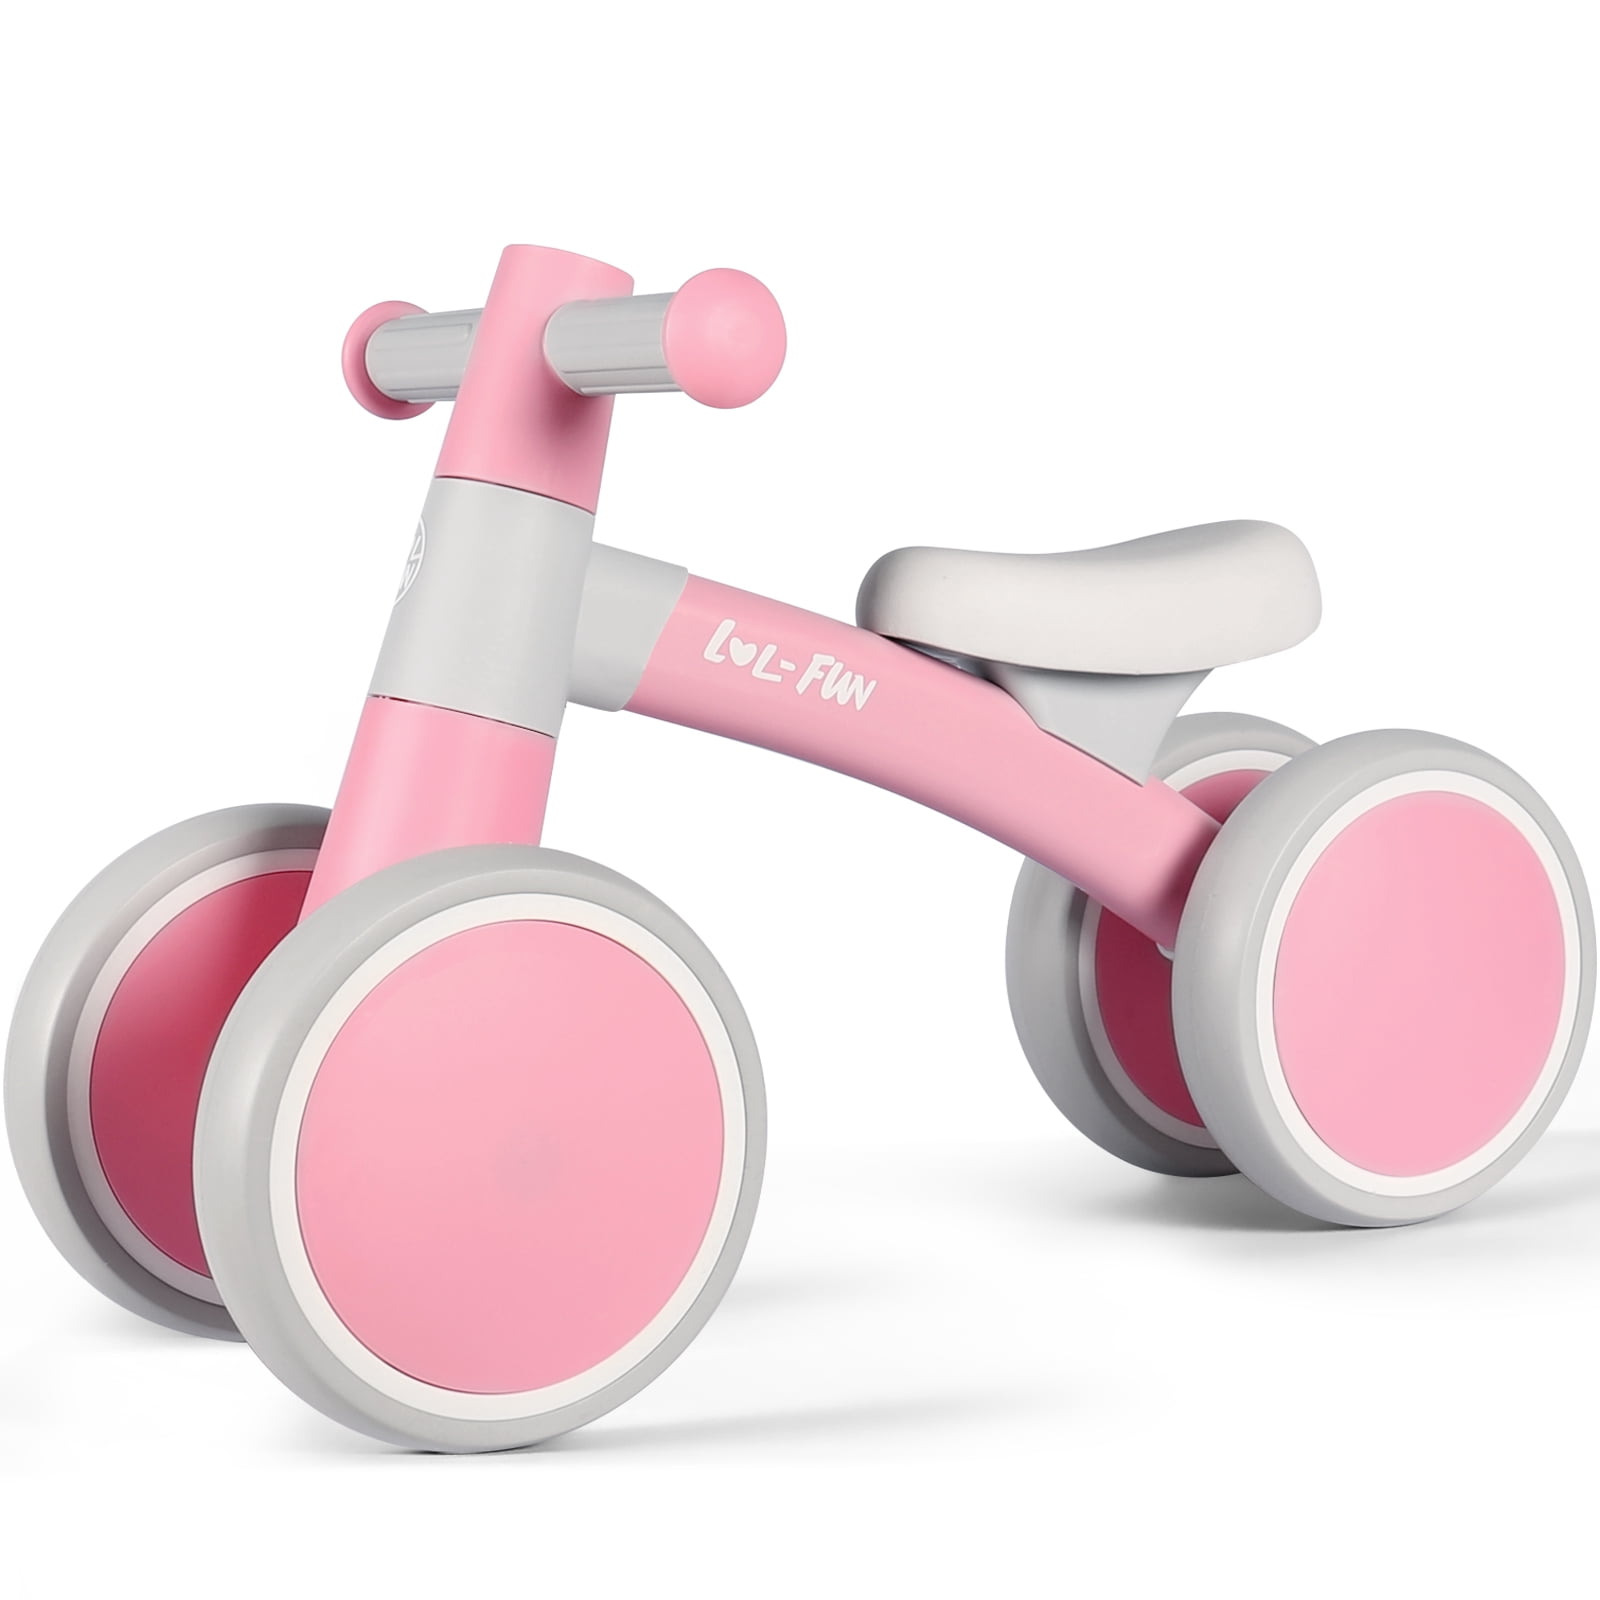 LOL-Fun 4 Wheels Balance Bicycle Walking Studying Balance Baby Balance ...